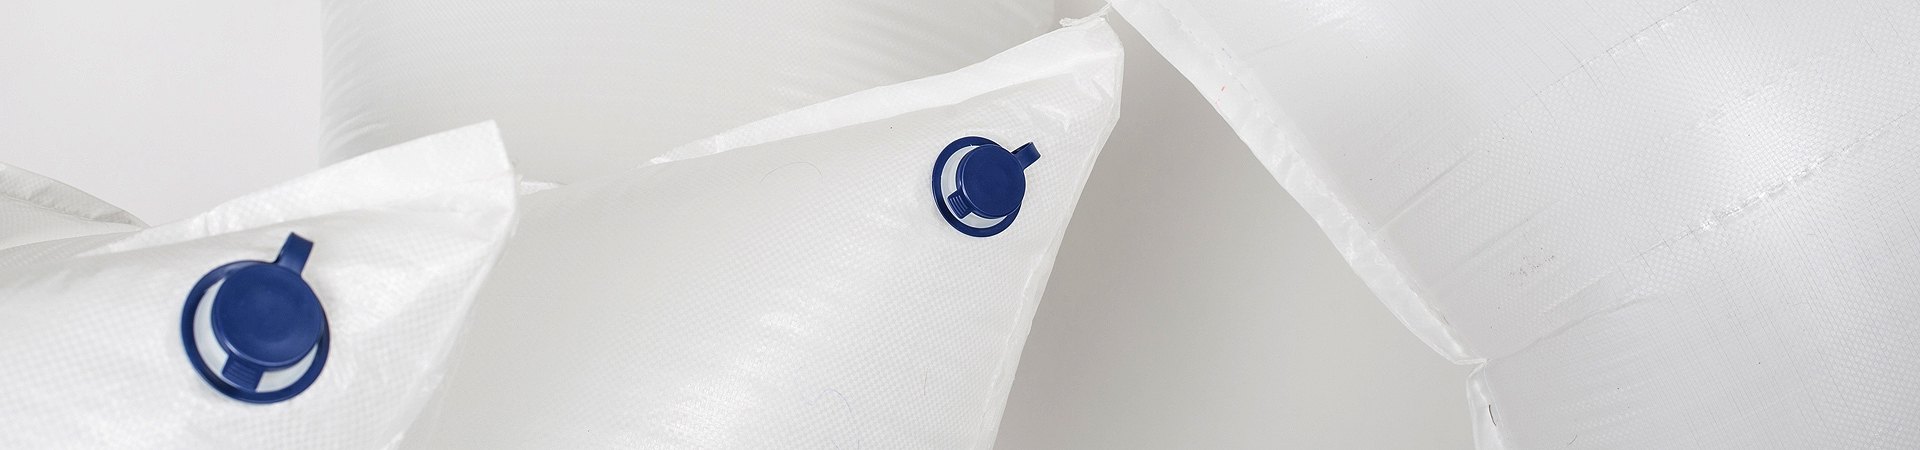 manicardi - hight quality big bags Contactos